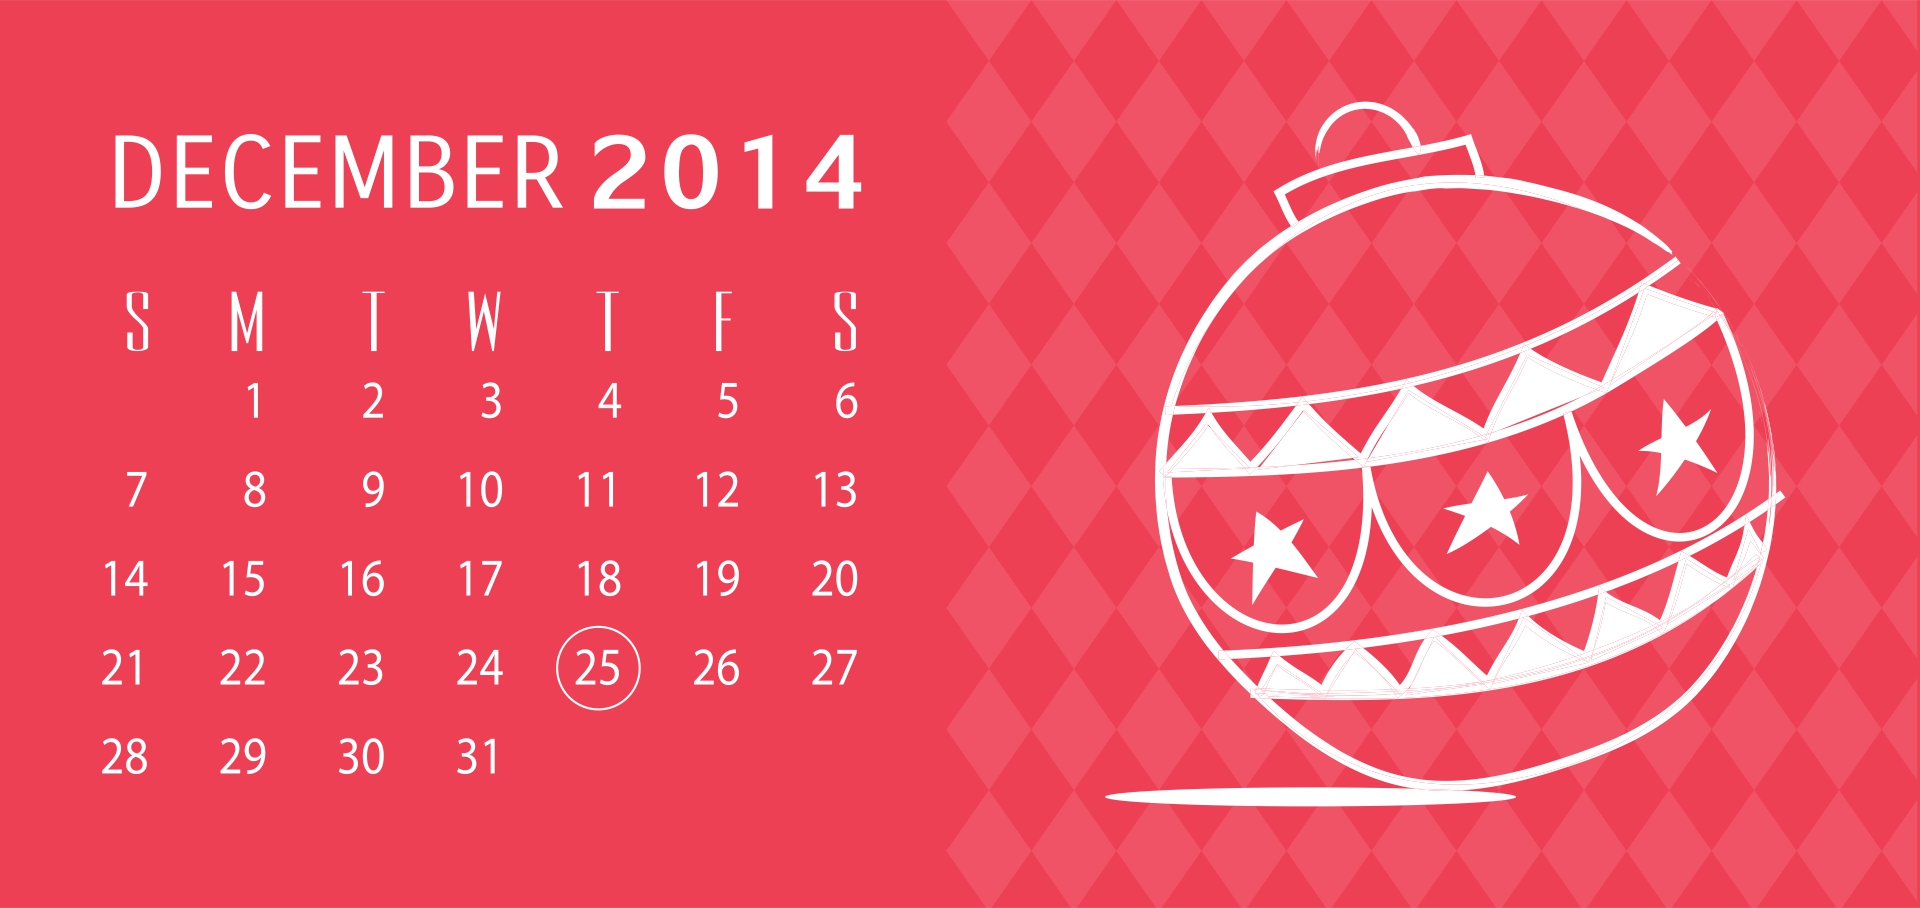 Printable Christmas Countdown Calendar 2014